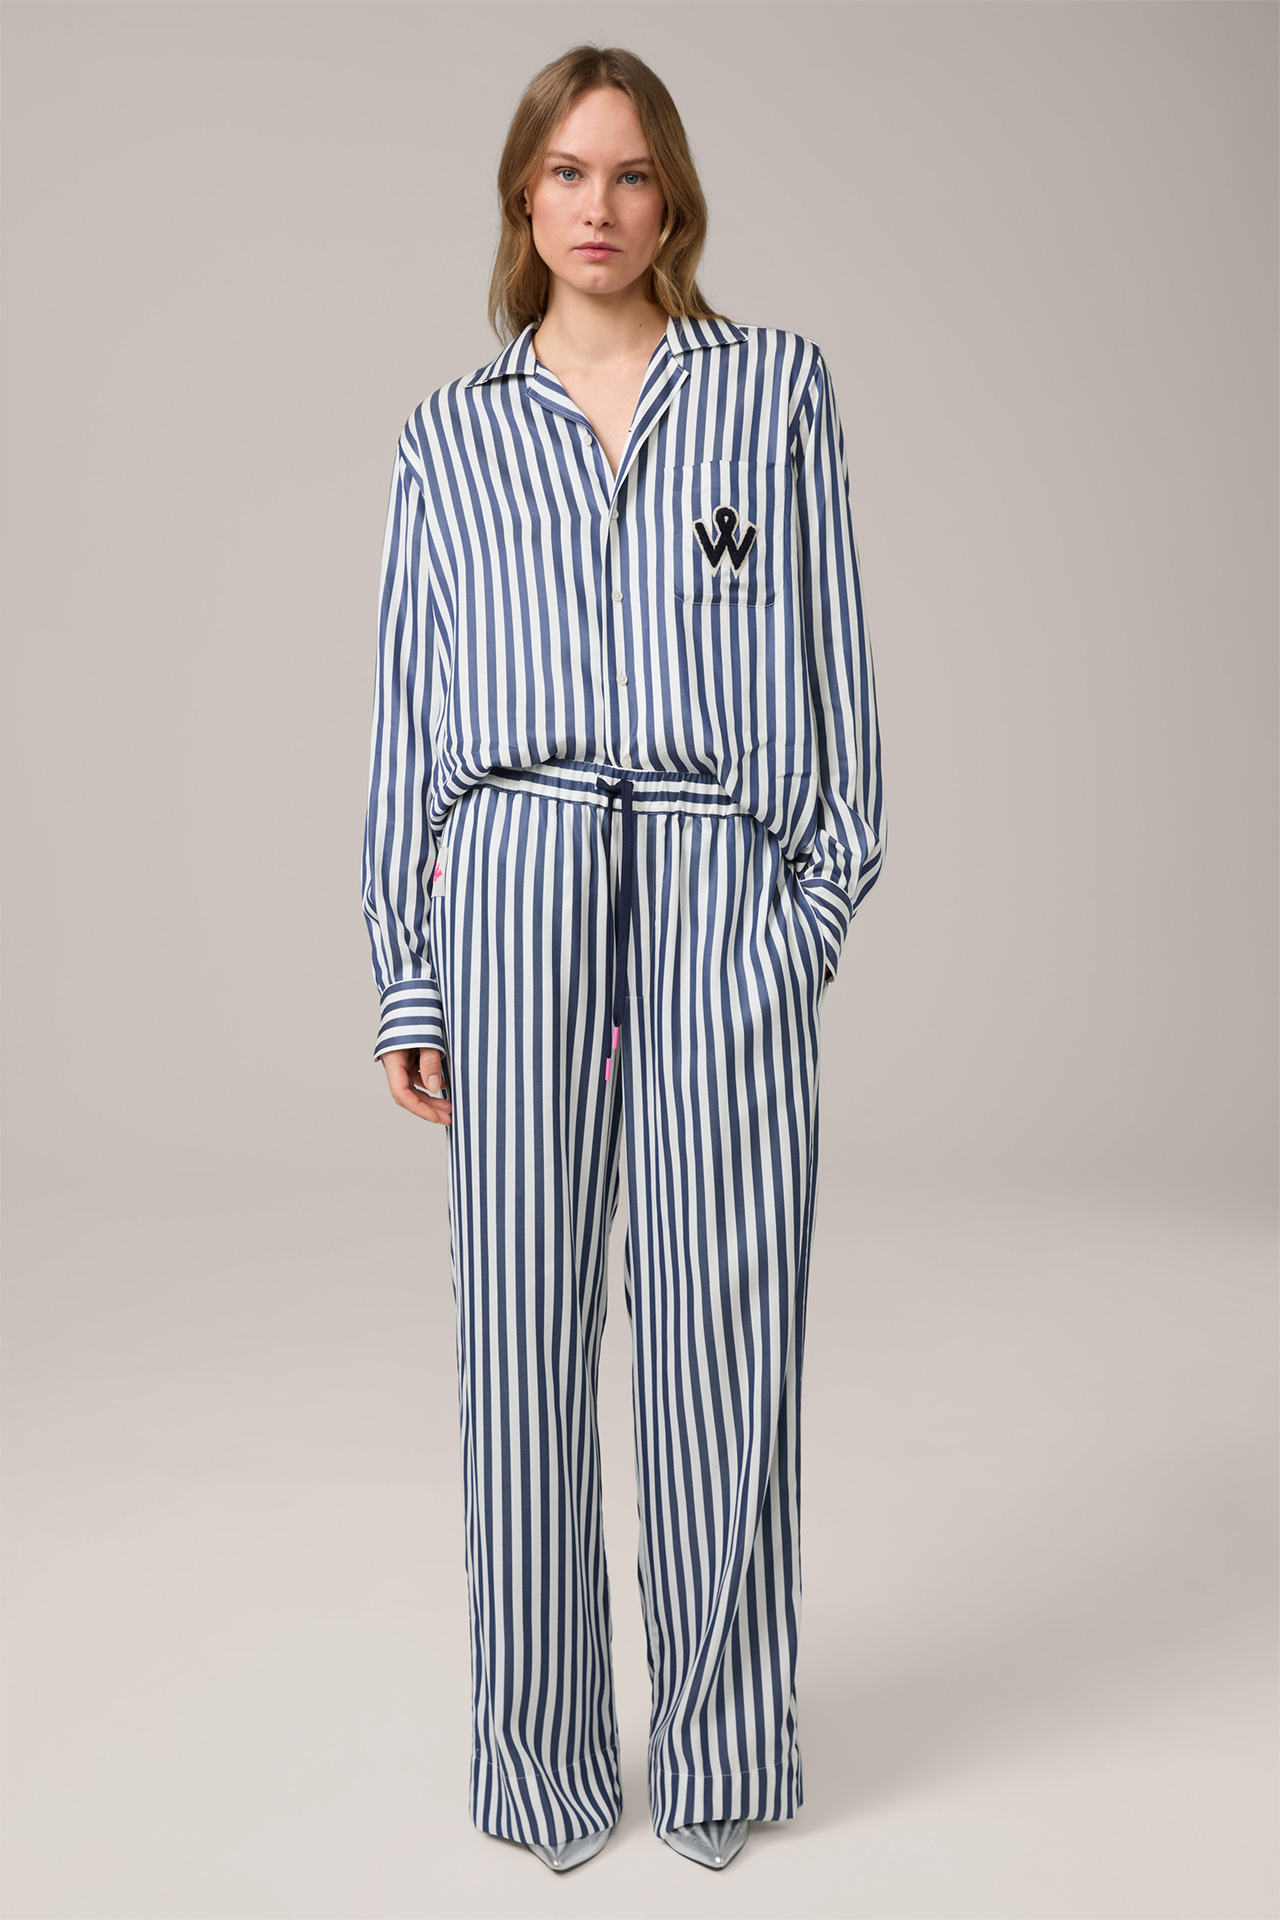 Pantalon pyjama unisexe en lyocell rayé marine